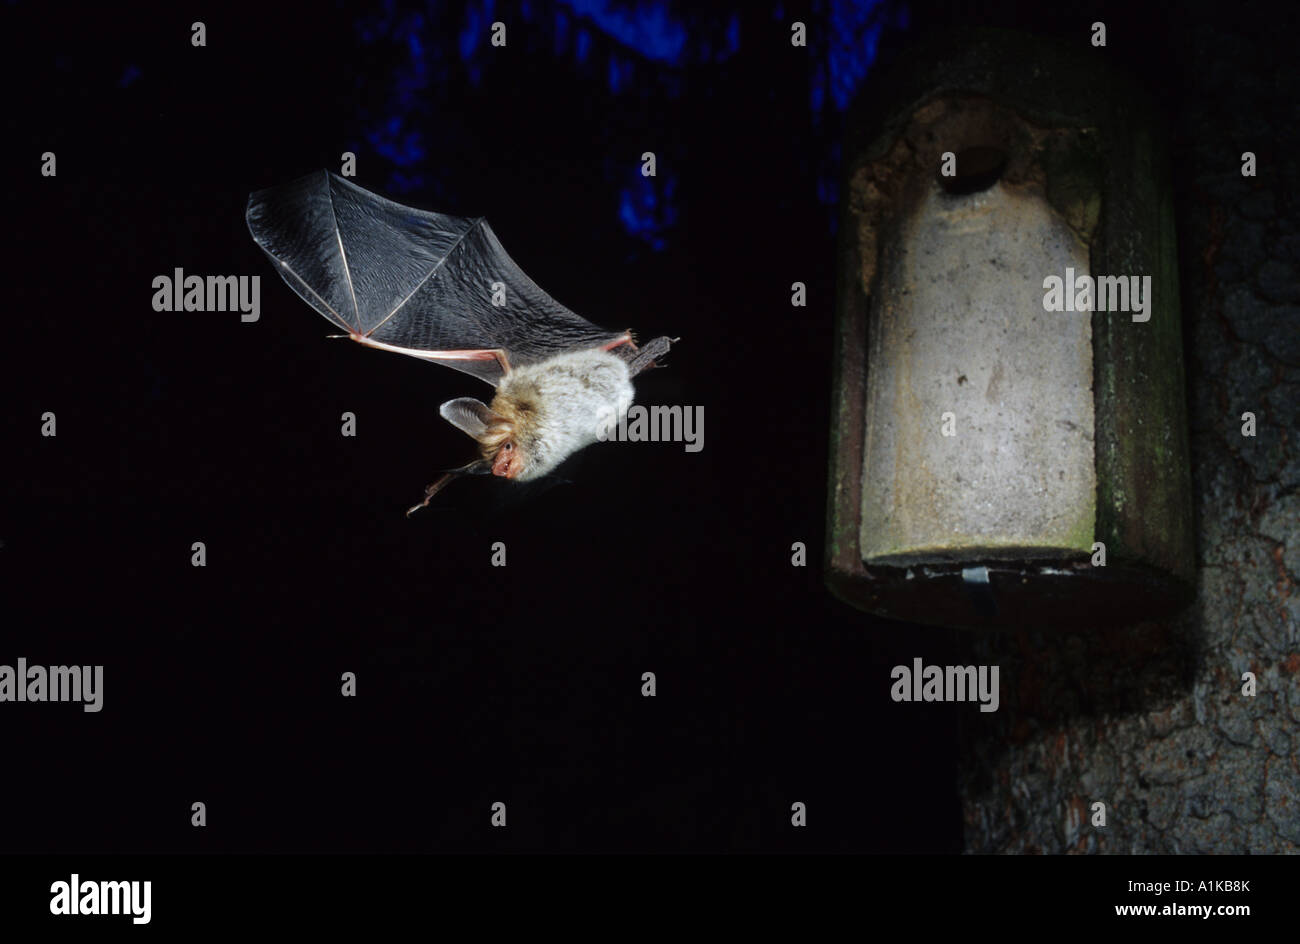 Bechstein's bat (Myotis bechsteinii) Stock Photo